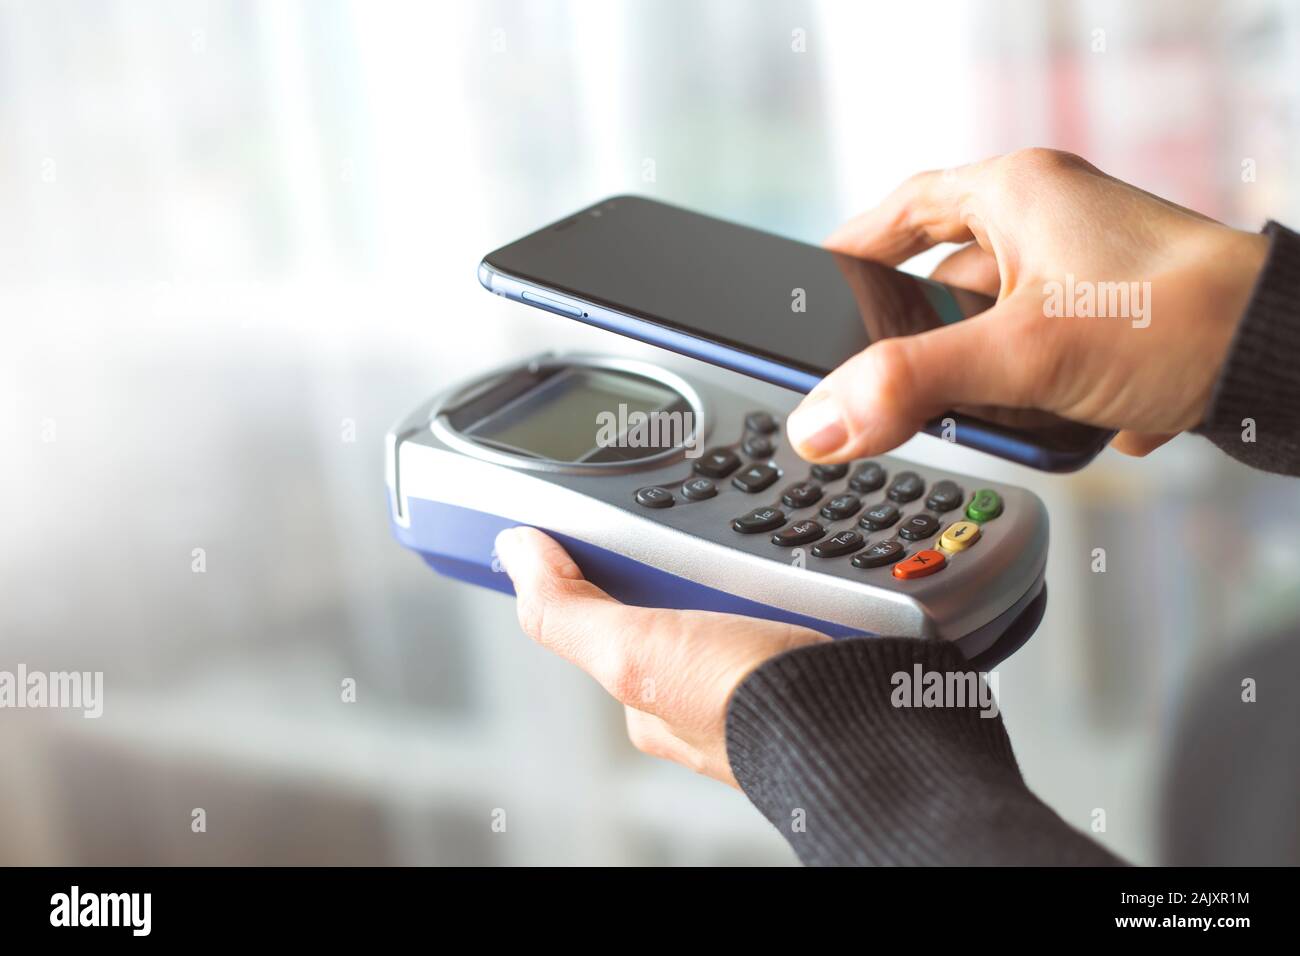 Die Hand des Kunden zahlt sich für das Smartphone im Geschäft mit NFC-Technologie aus. Handy zahlt die Rechnung mit kontaktloser Technologie. Stockfoto